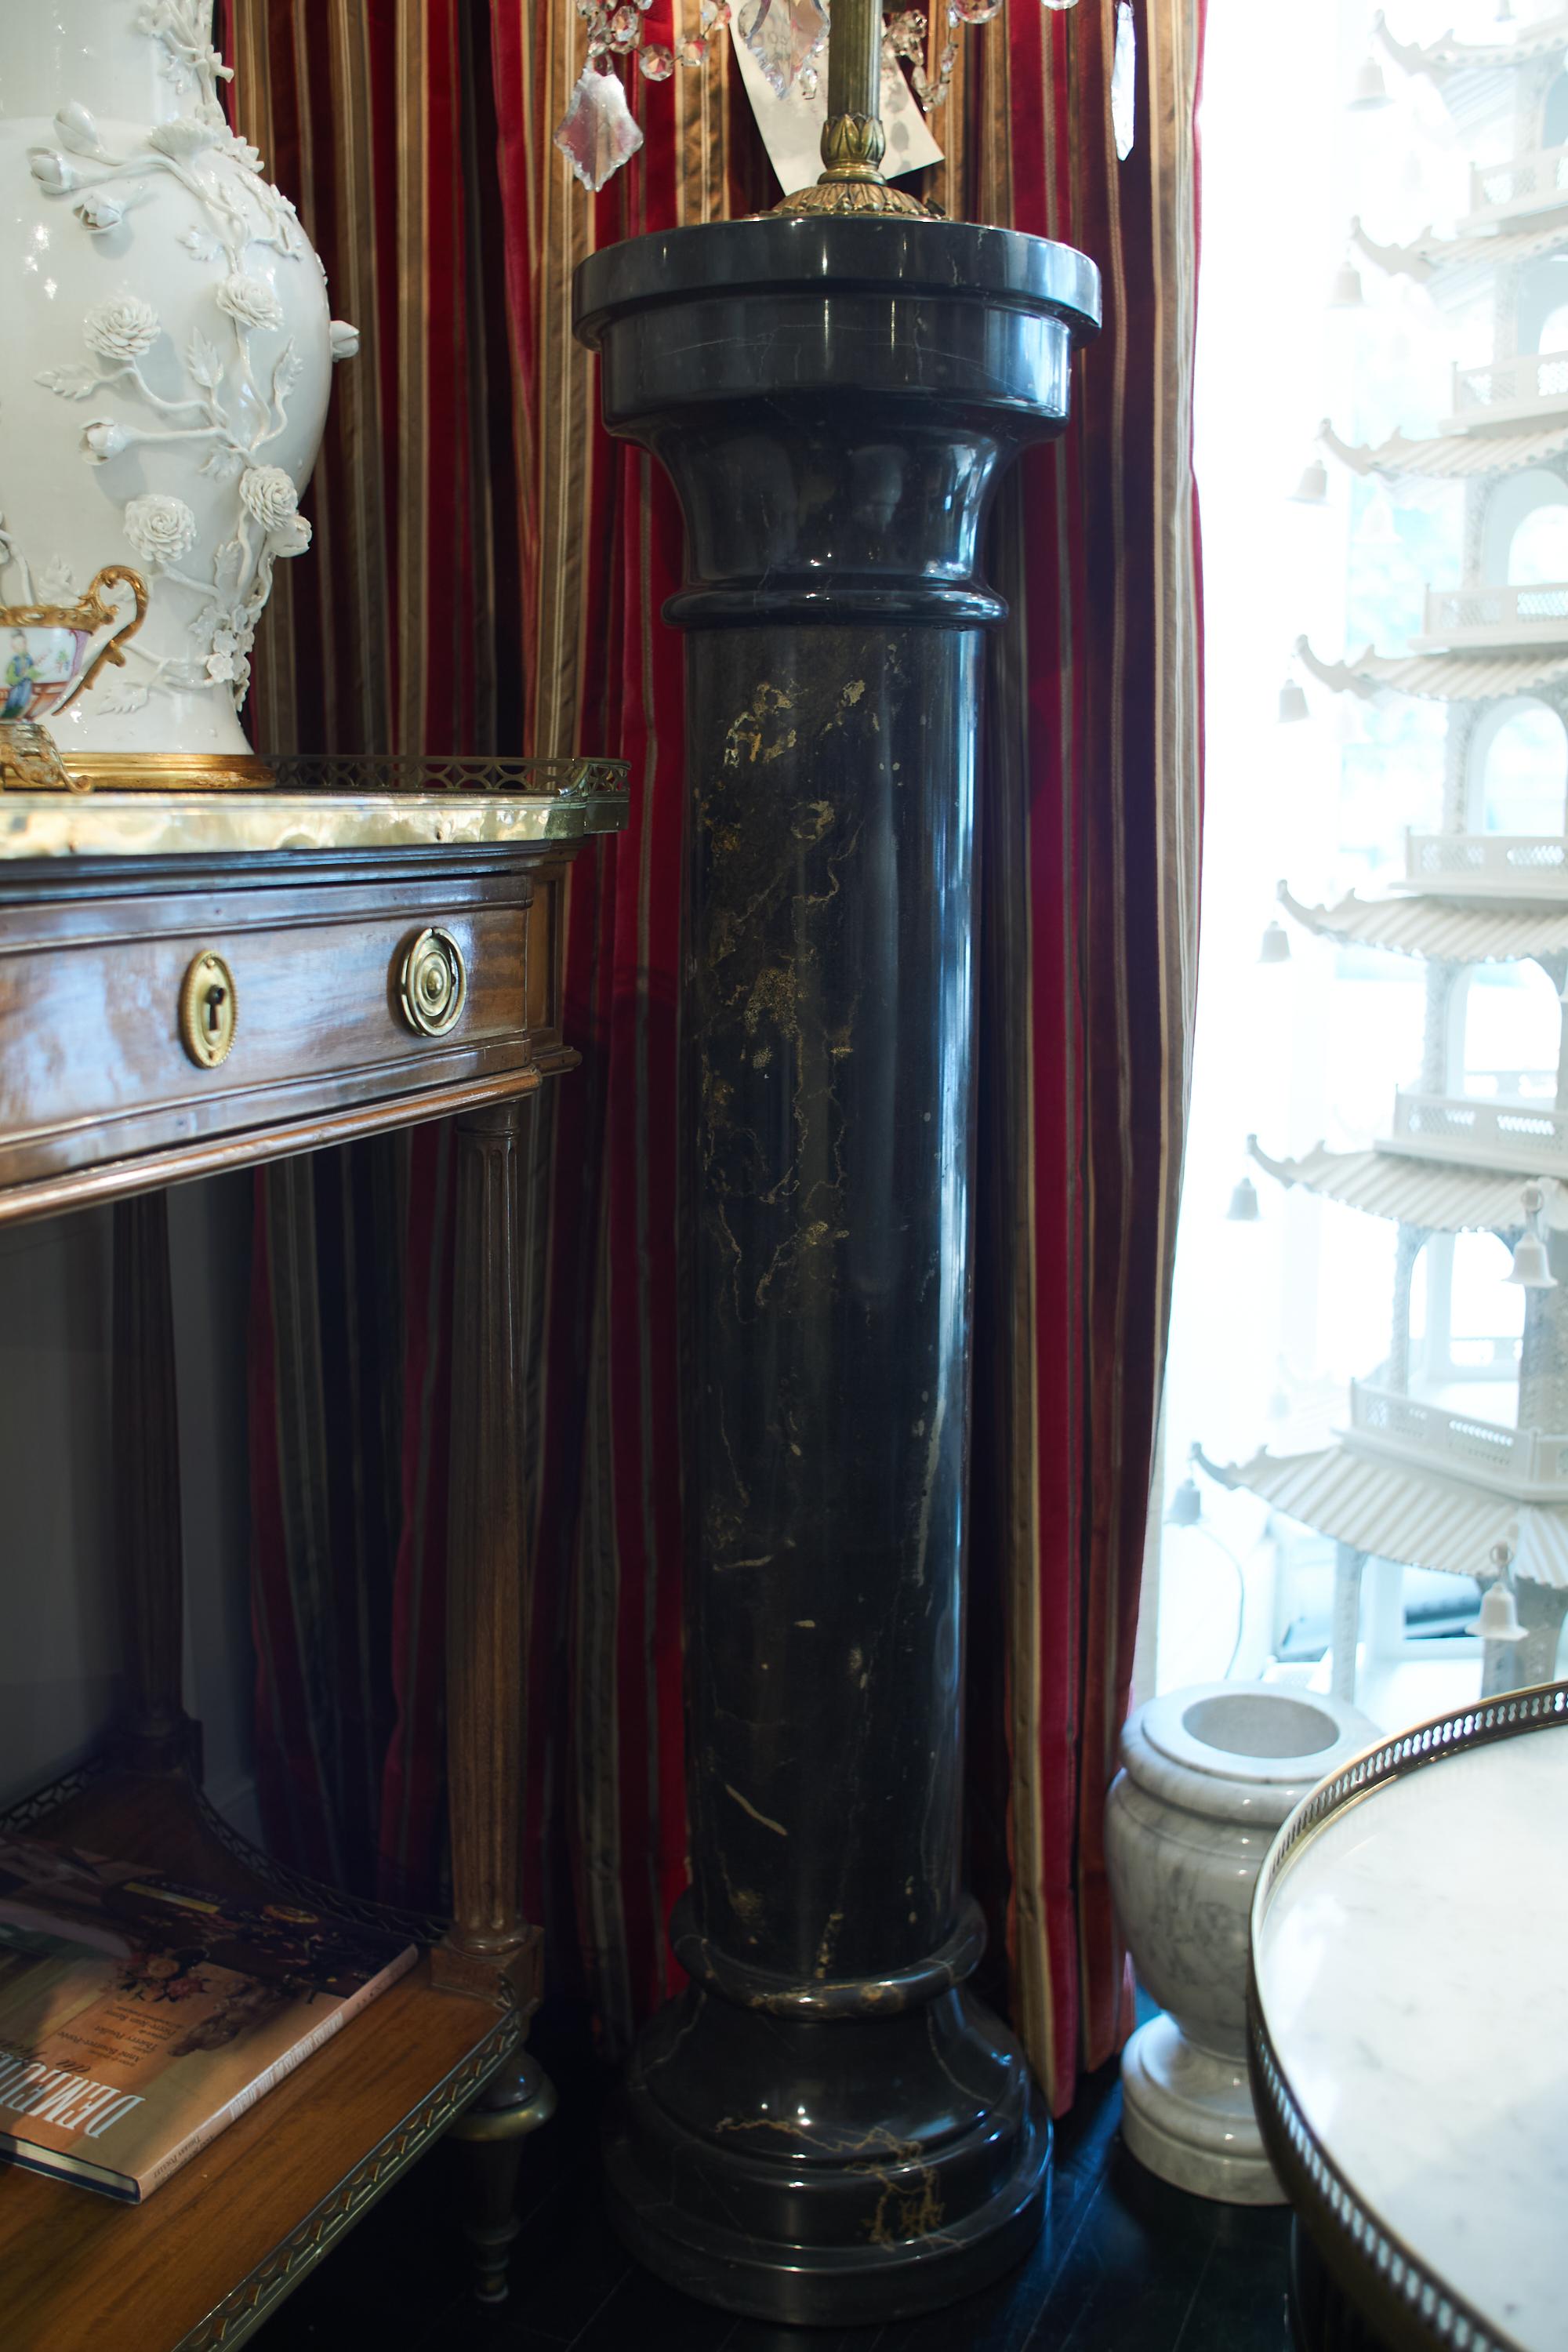 Französische Säule aus schwarzem Marmor.
Für ein schickes Interieur, klassische Linien im Geiste des Hollywood Regency.